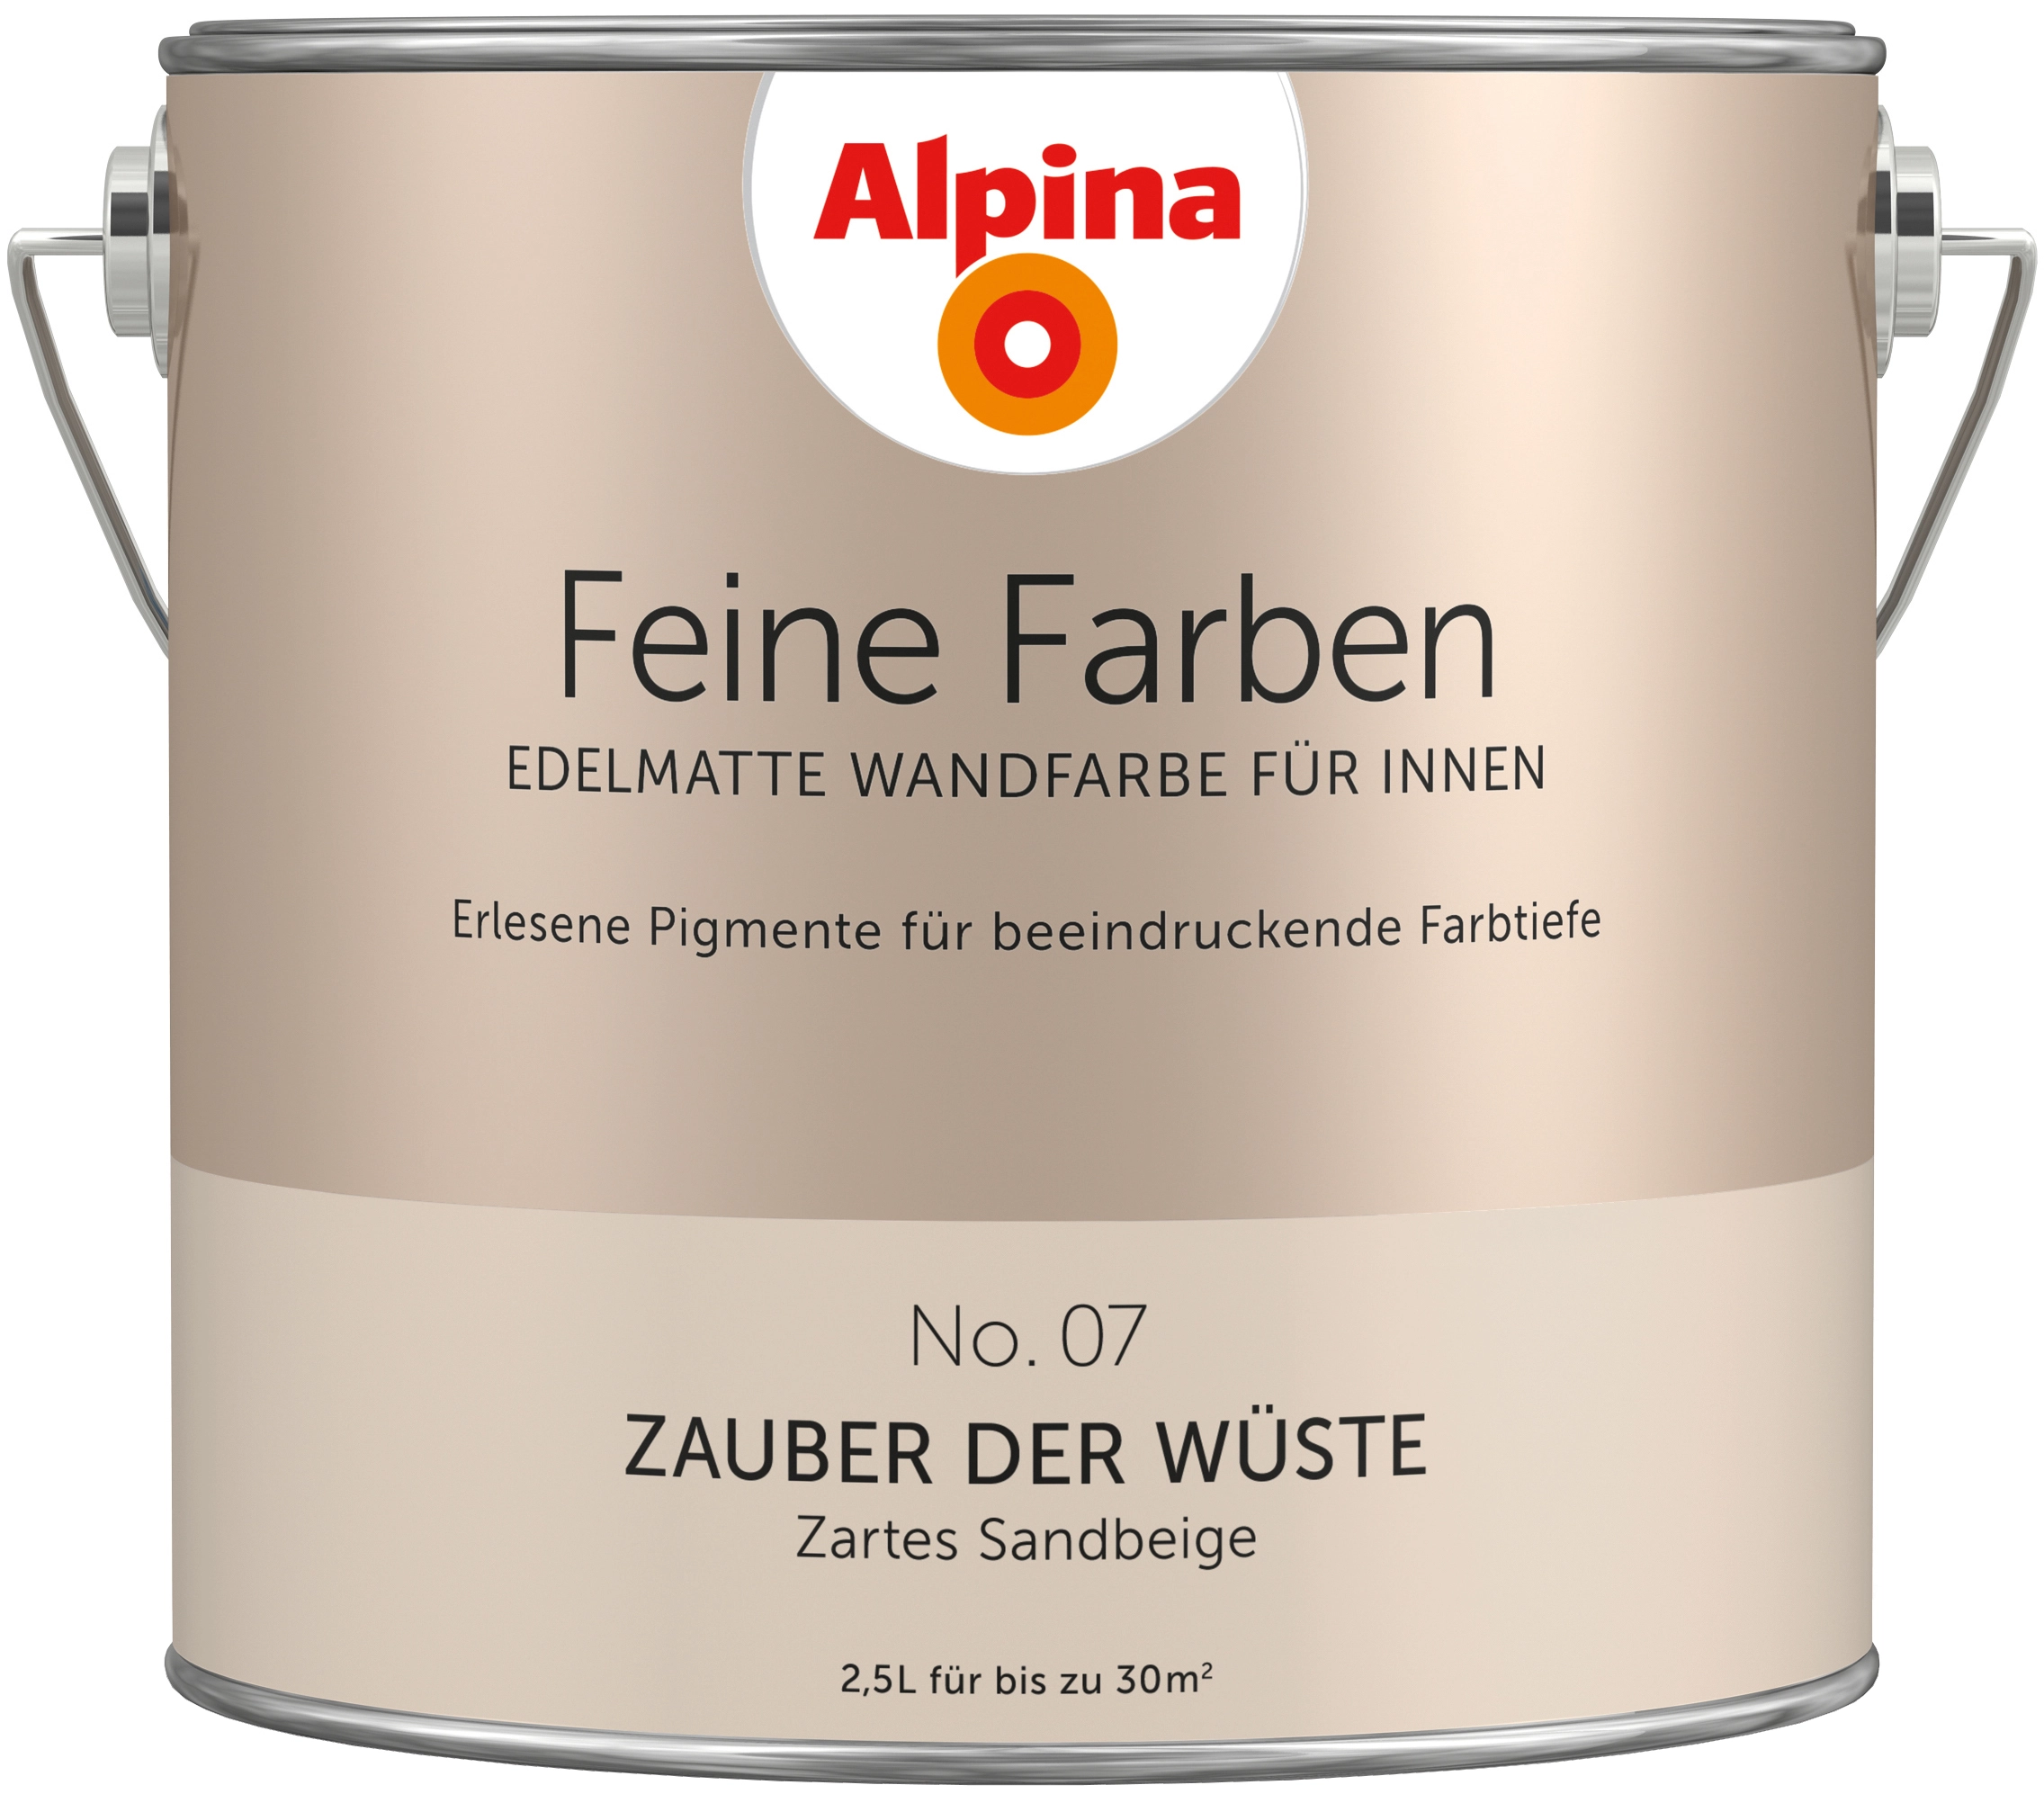 Alpina Feine Farben No. 7 Zauber der Wüste® Sandbeige edelmatt